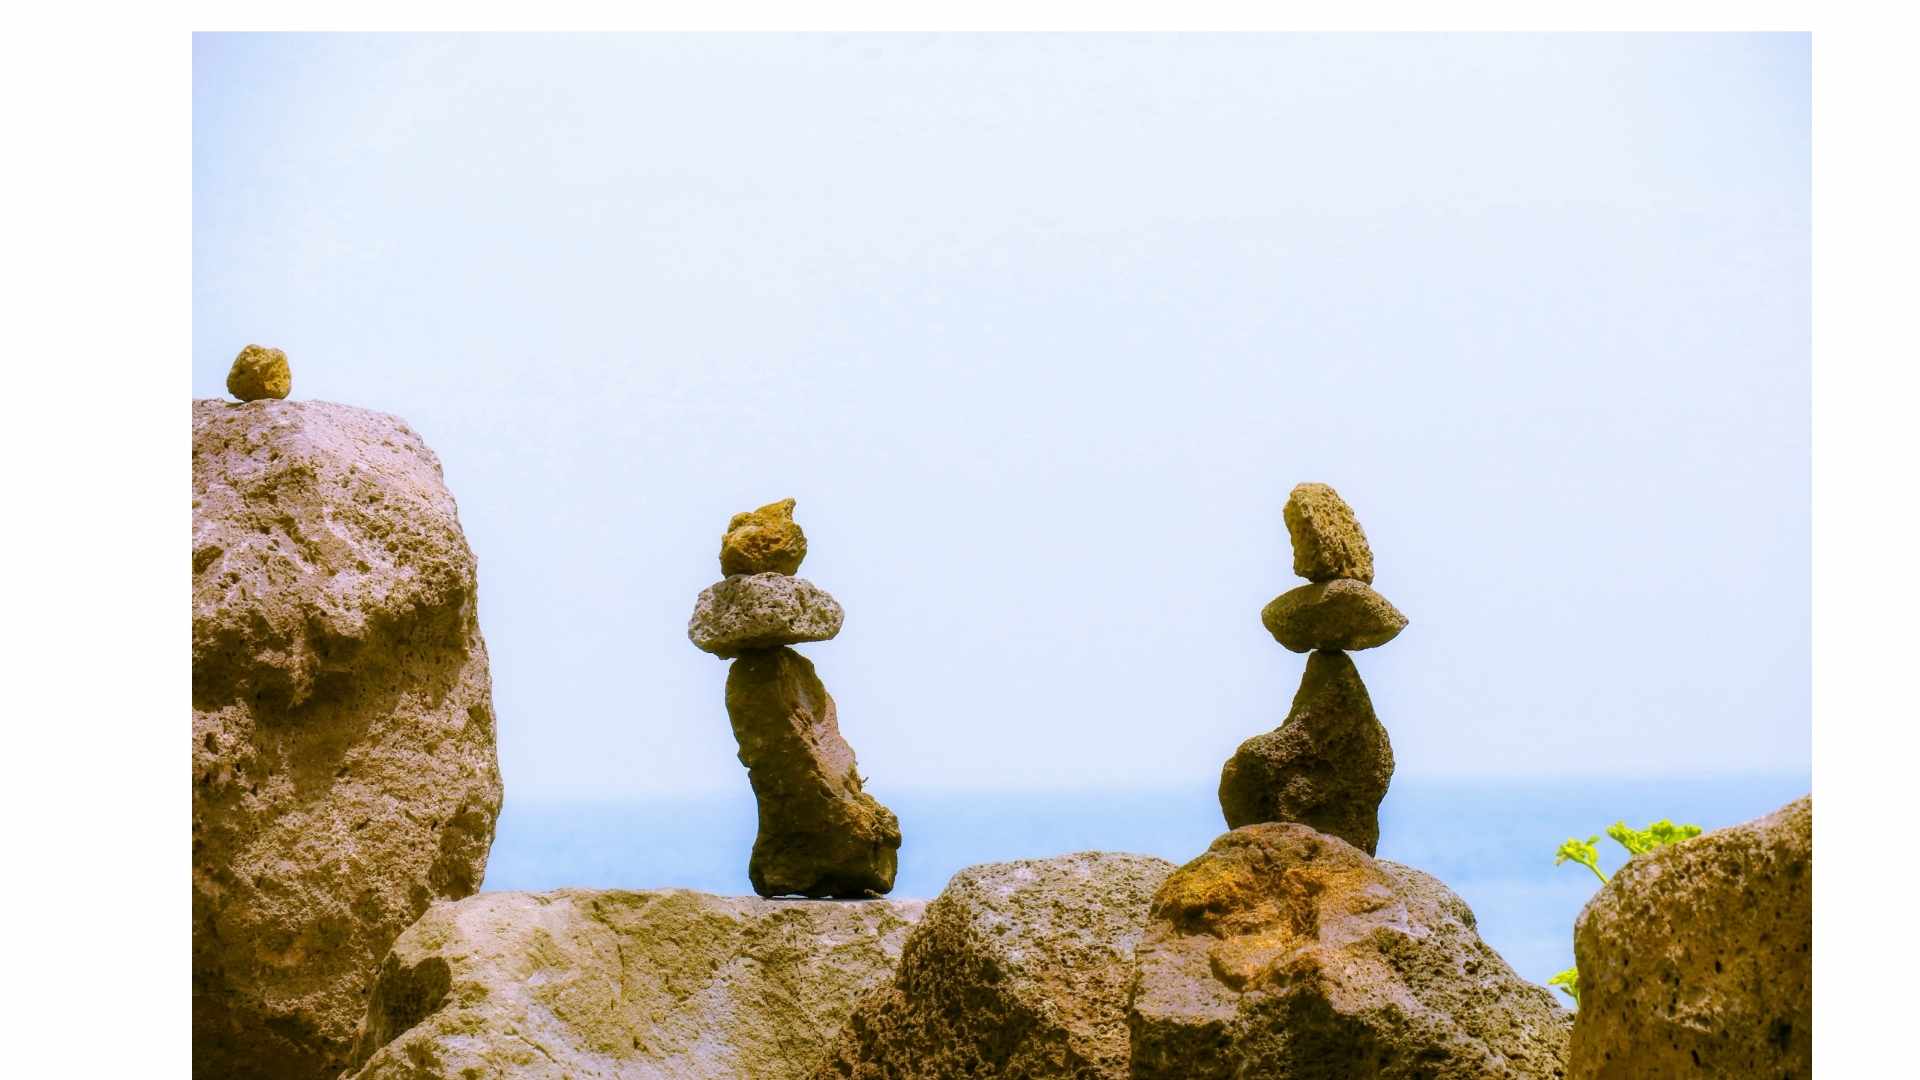 פסלי אבן המייצגים תכונות אופי חיוביות ושליליות